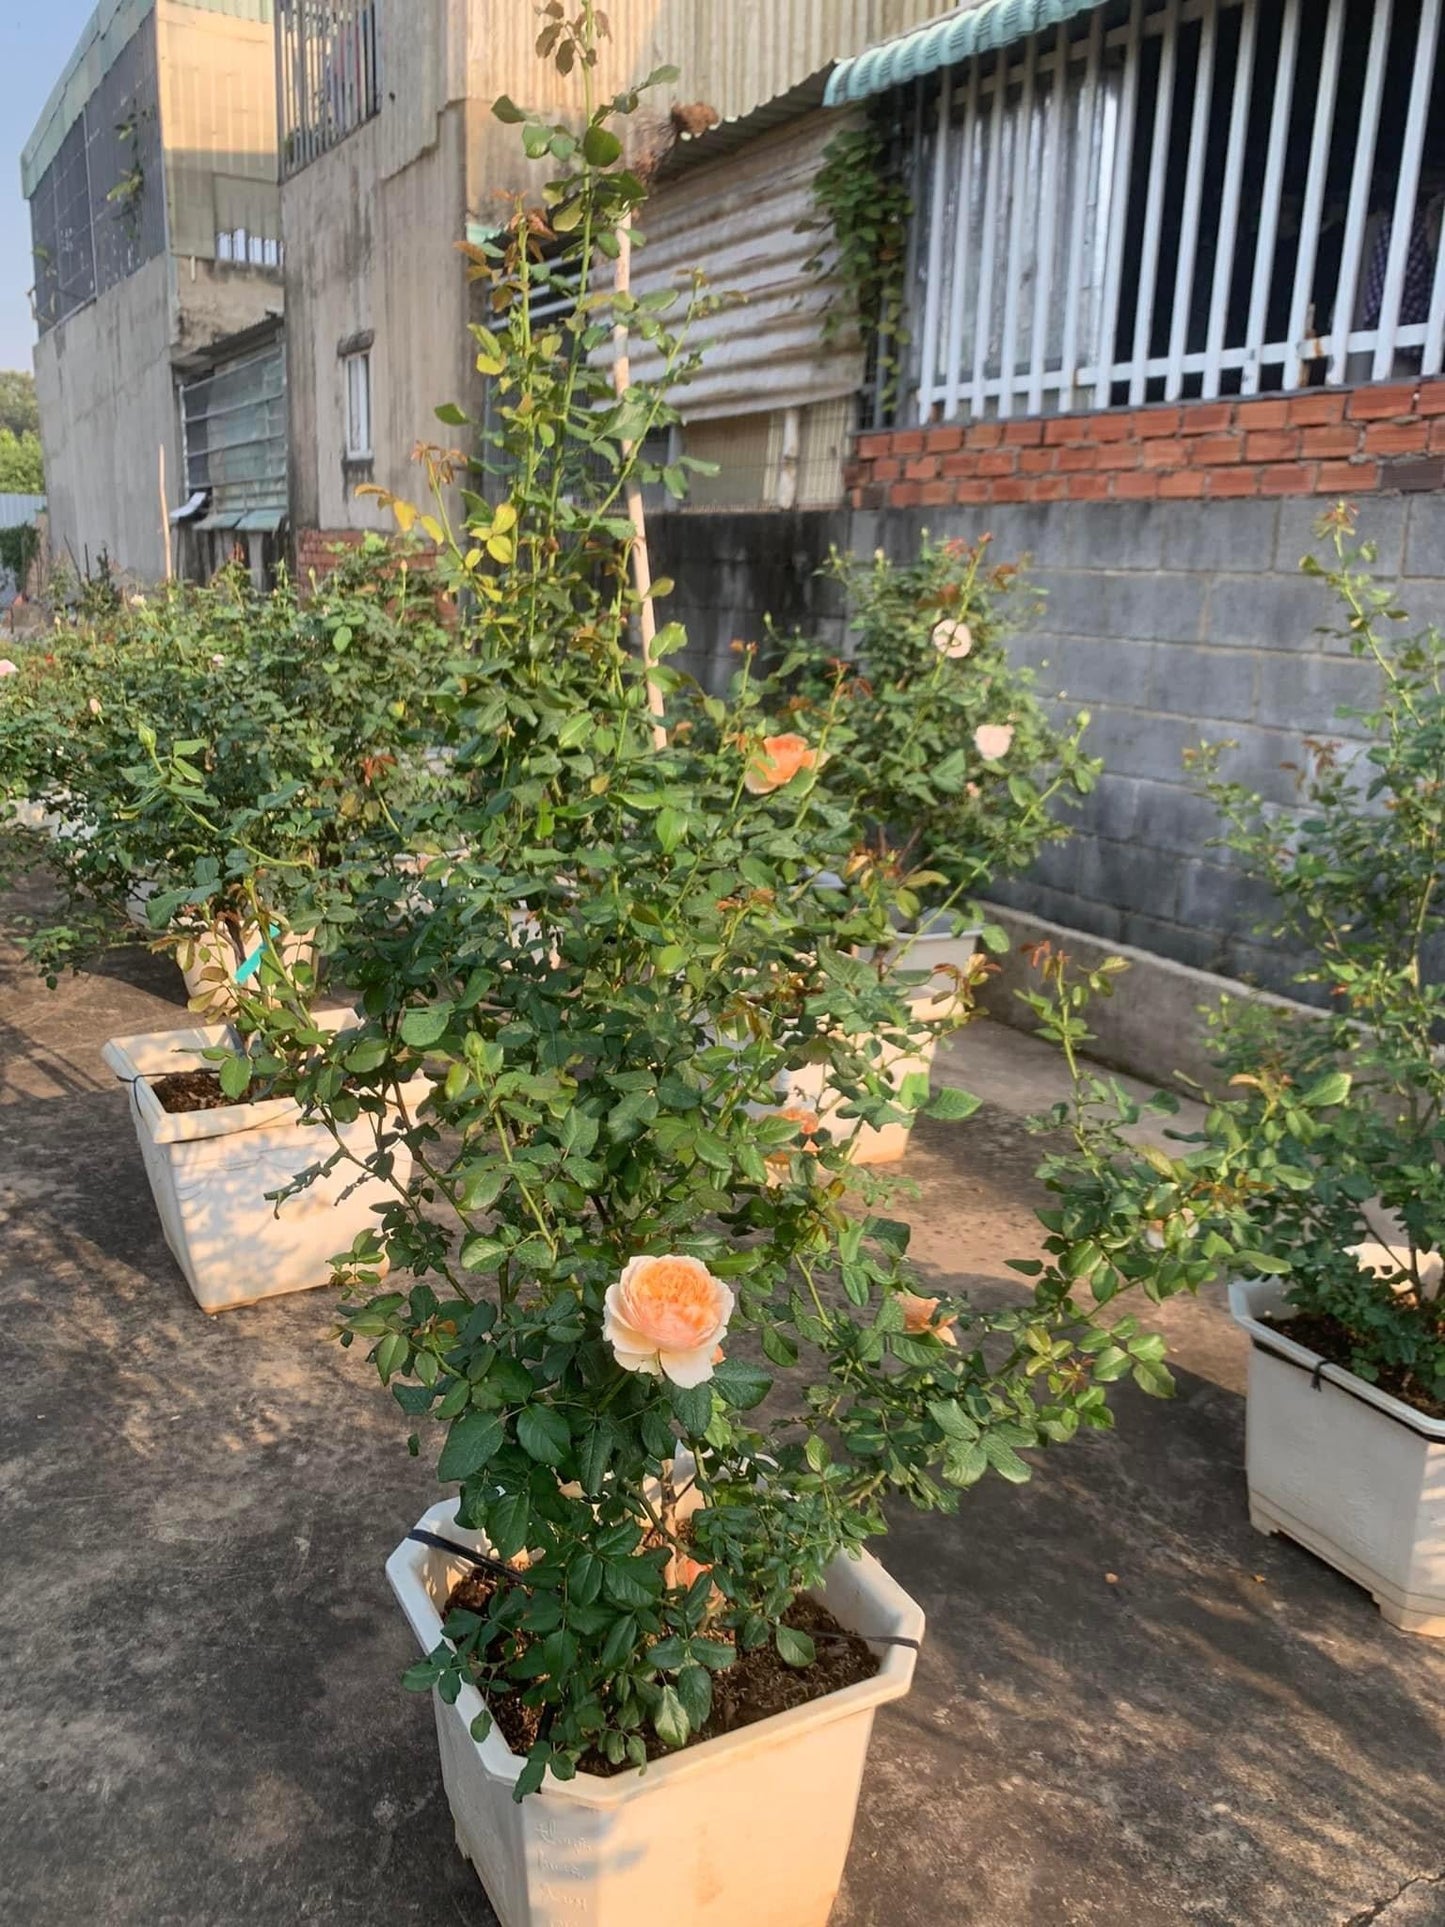 Masora- Potted Rose Plant ( Extra Medium Size)